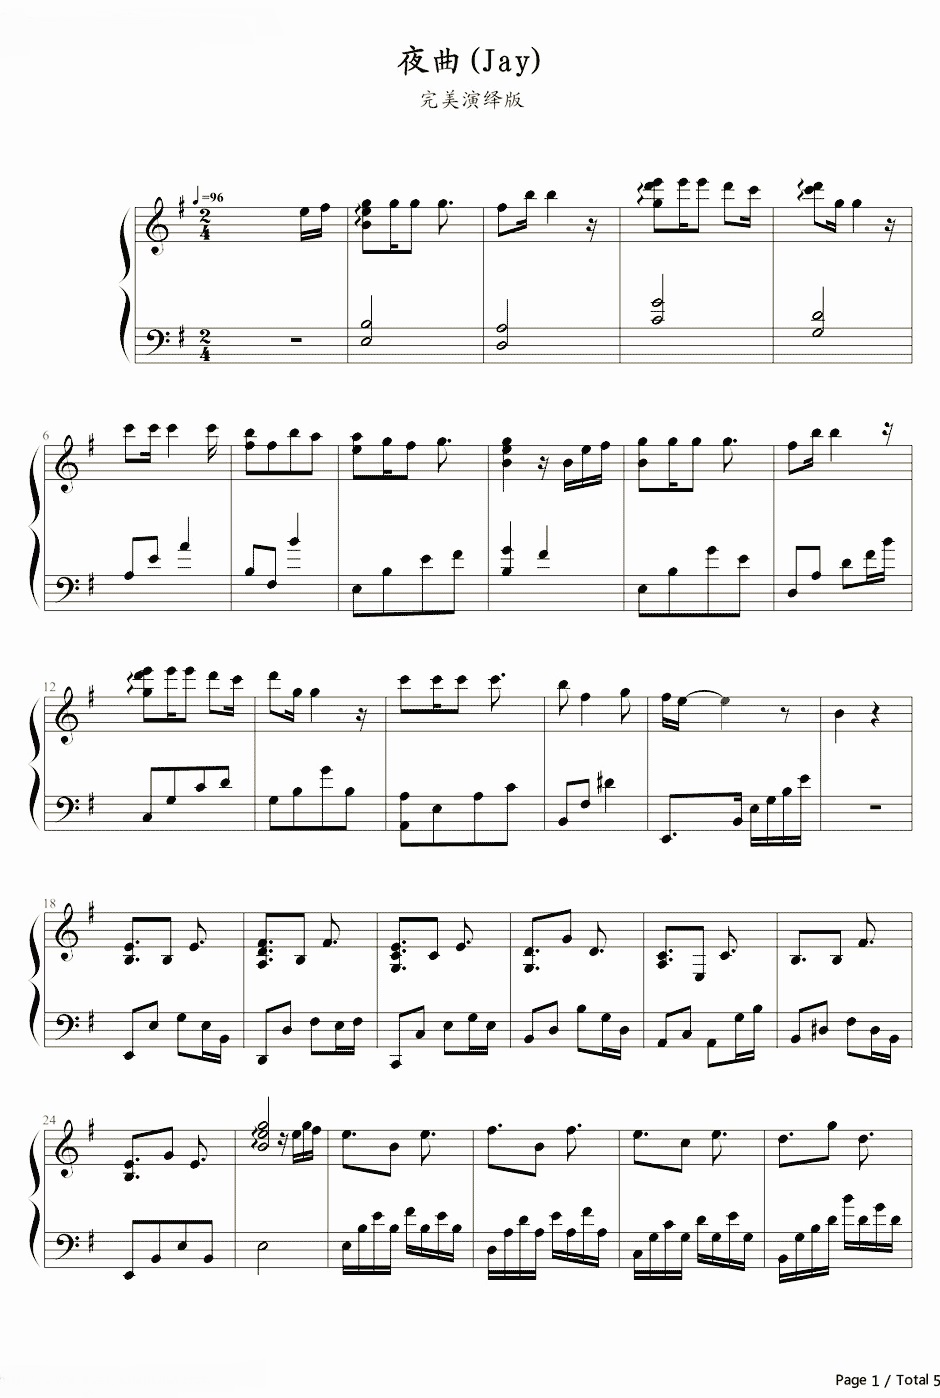 《夜曲》的钢琴谱钢琴曲谱 - 周杰伦